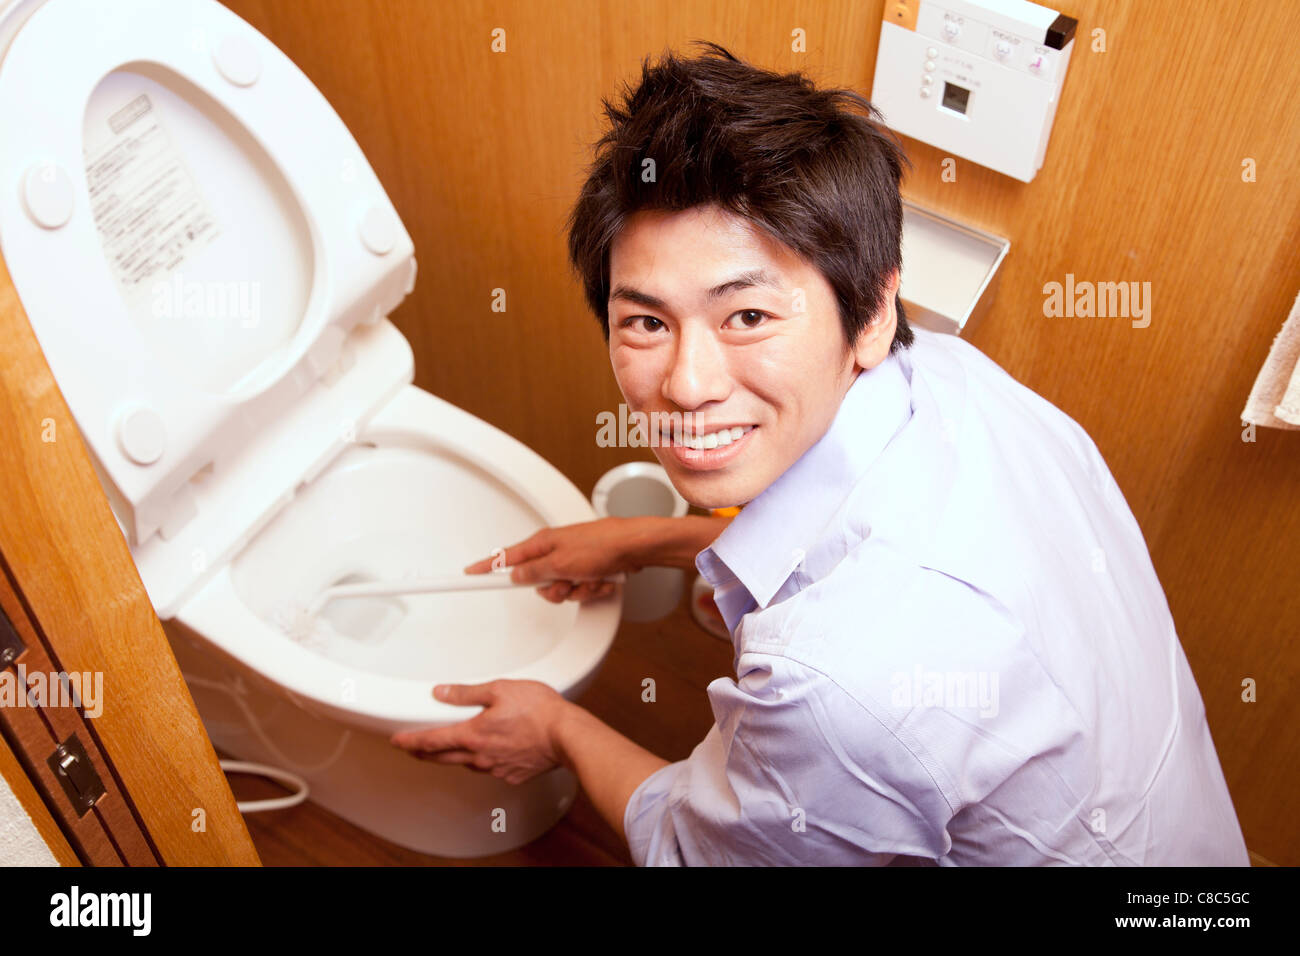 Uomo della toilette immagini e fotografie stock ad alta risoluzione - Alamy